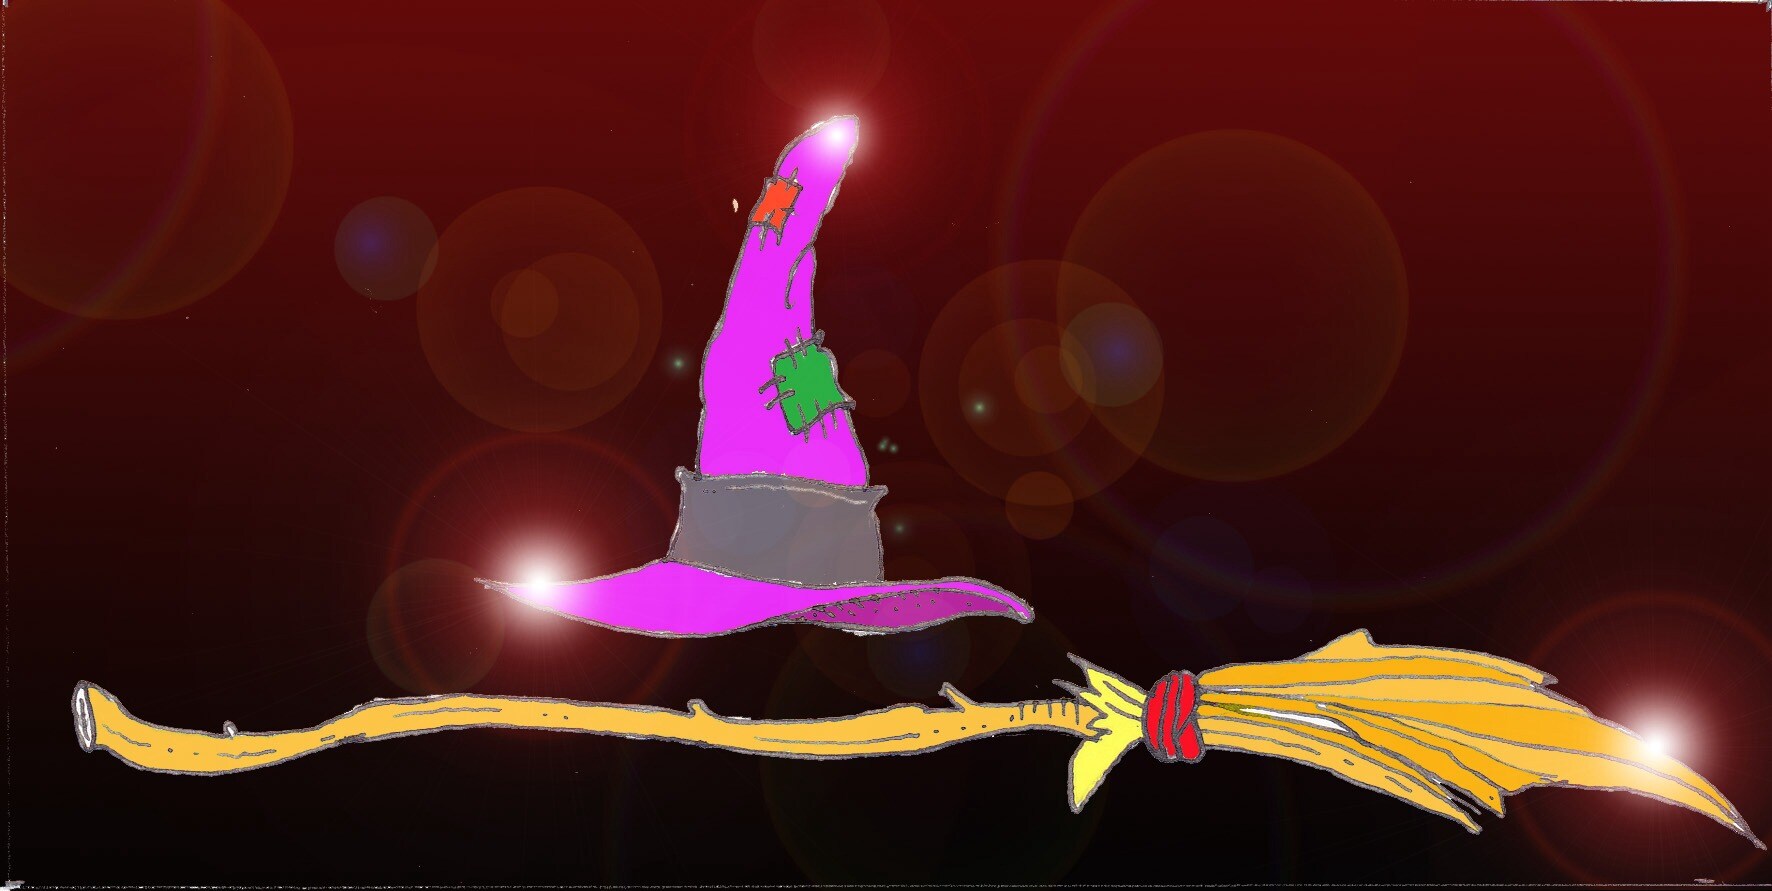 Immagine di un cappello da strega e di una scopa (Per leggerne la descrizione proseguire nel link). Si vedono un cappello a punta di colore rosa (rattoppato, con  toppe verde e rossa) con un nastro grigio alla base e una scopa di saggina.